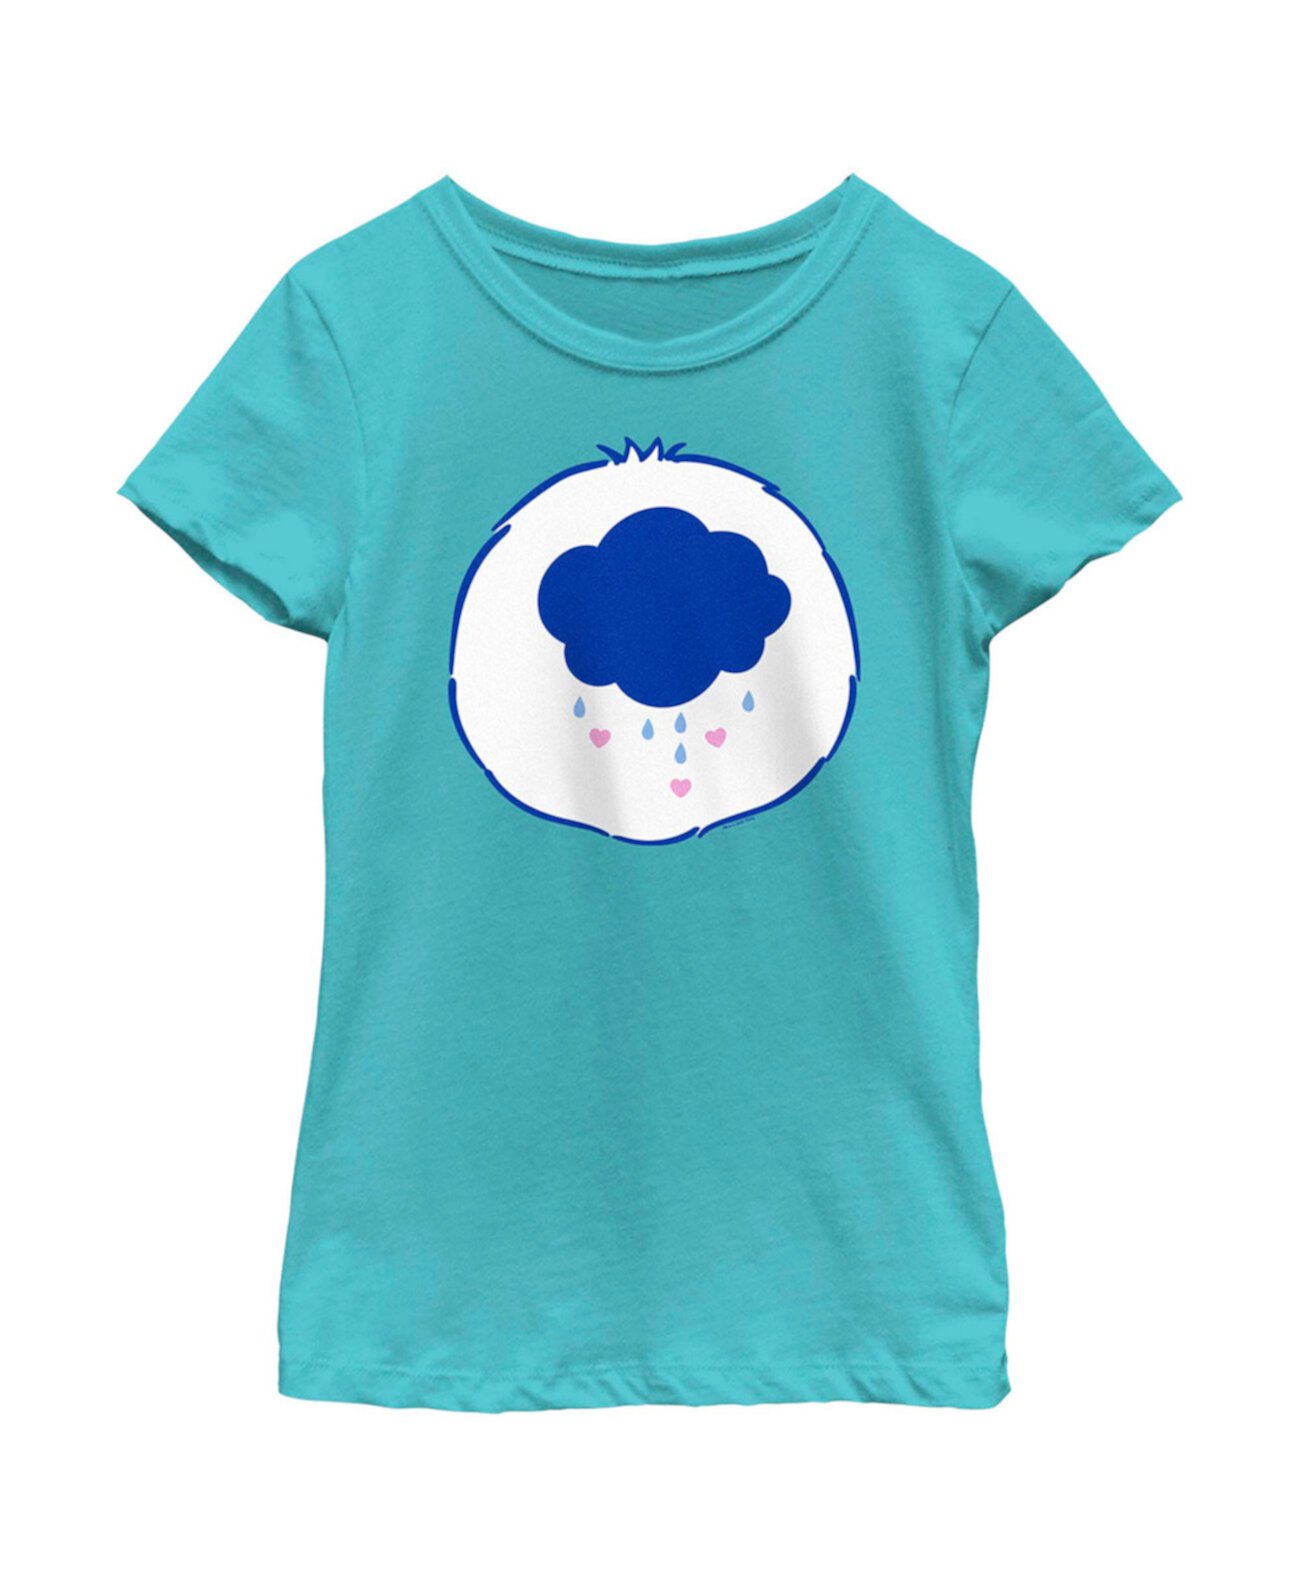 Детская футболка с костюмом сварливого медведя для девочки Care Bears